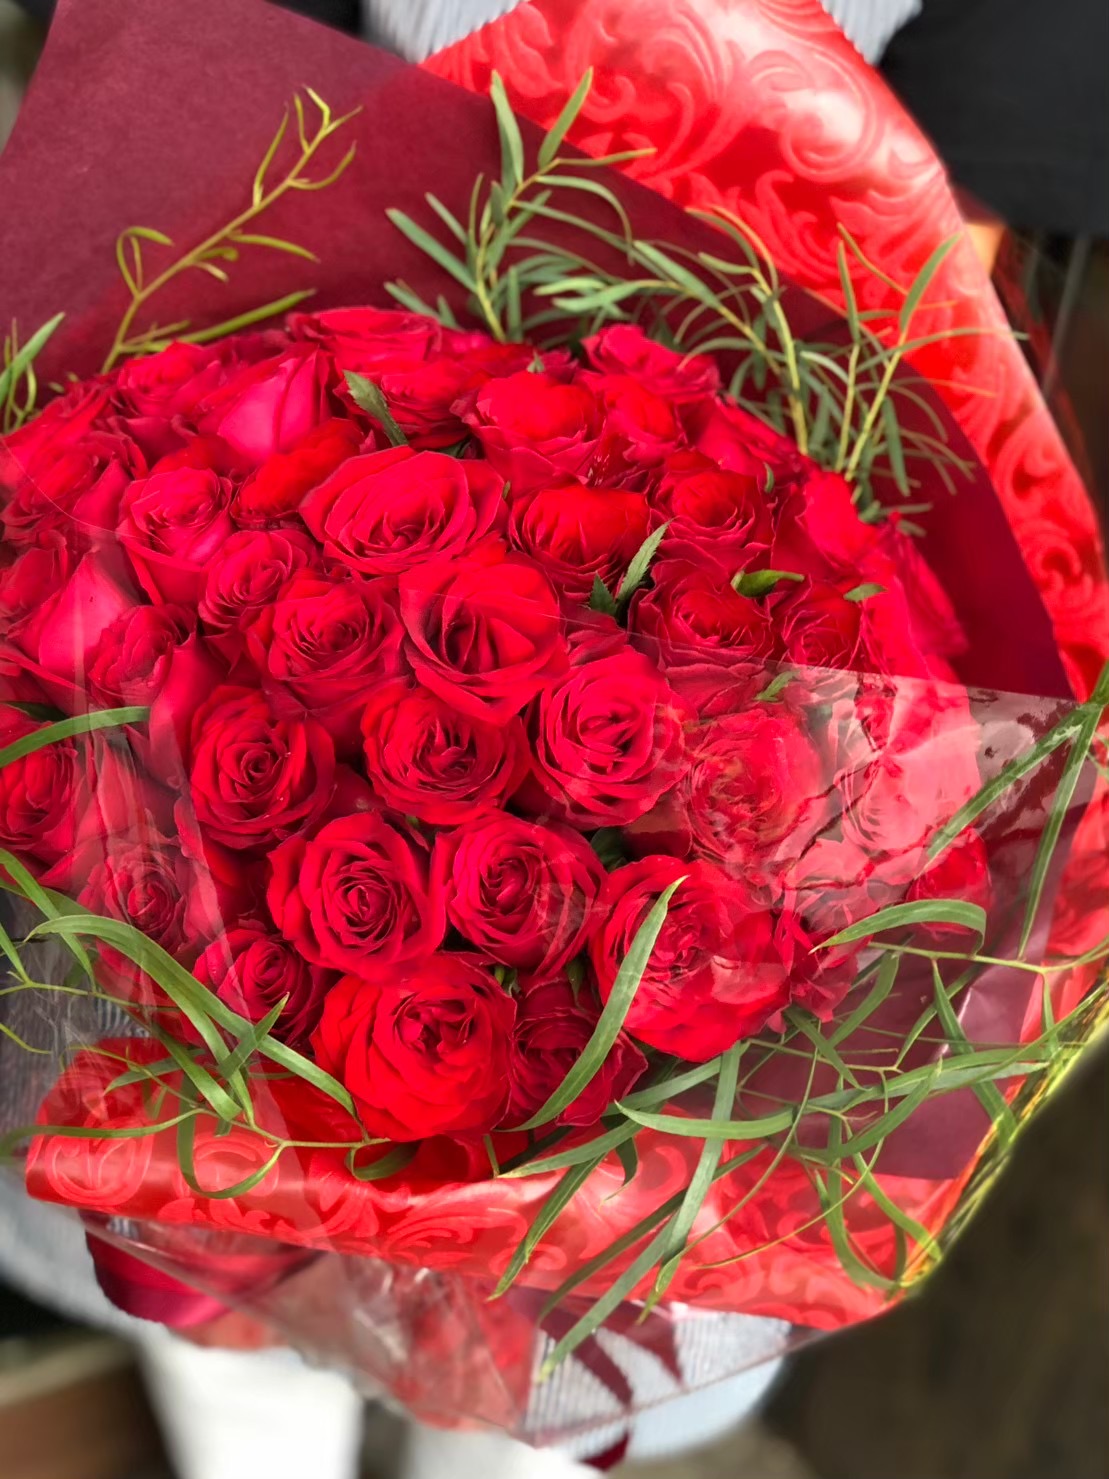 【プロポーズ】赤いバラ50本の花束